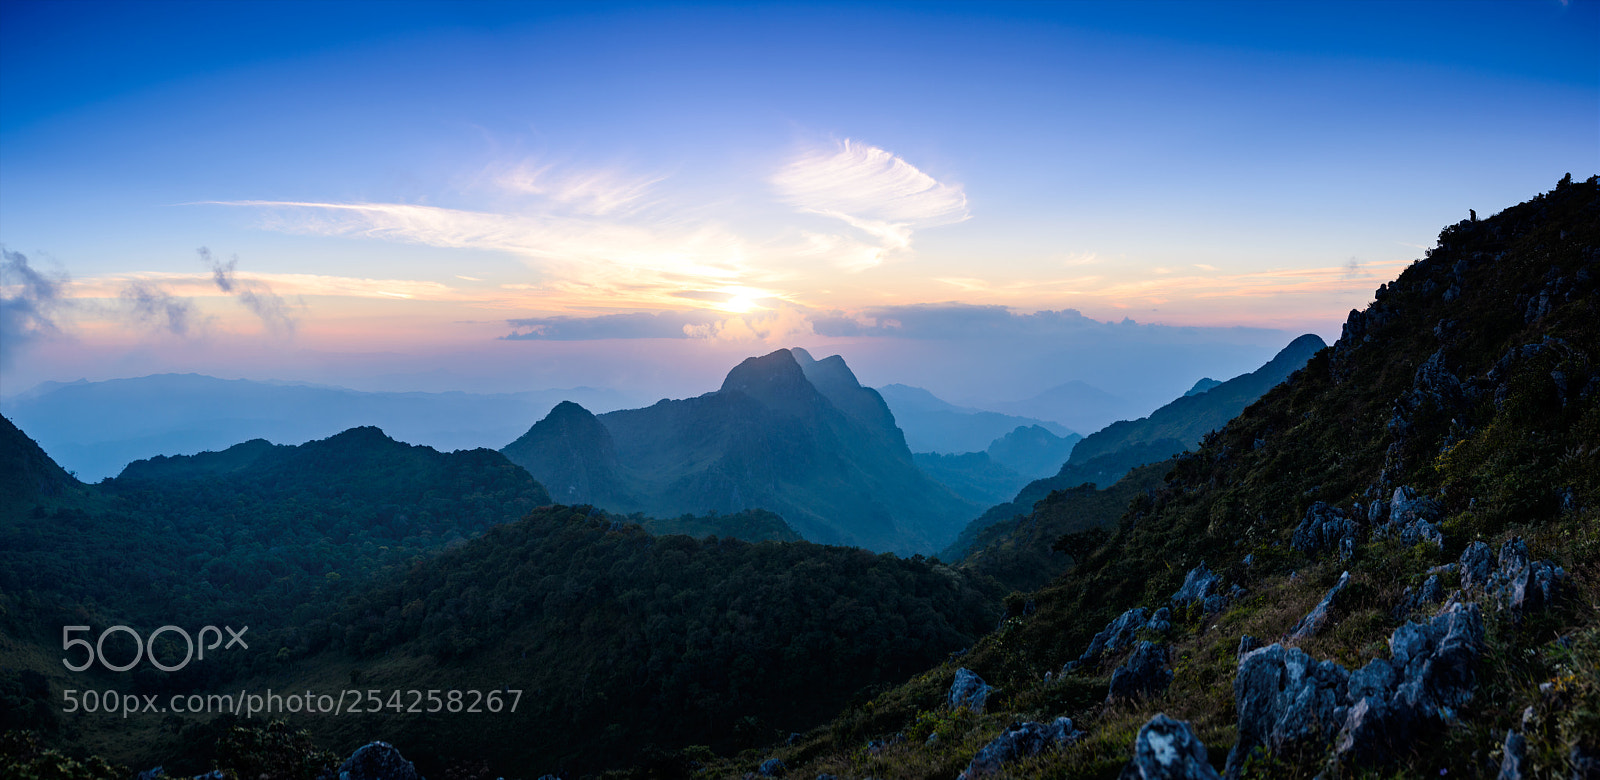 Nikon D600 sample photo. Mt.chiangdao sunset panorama photography